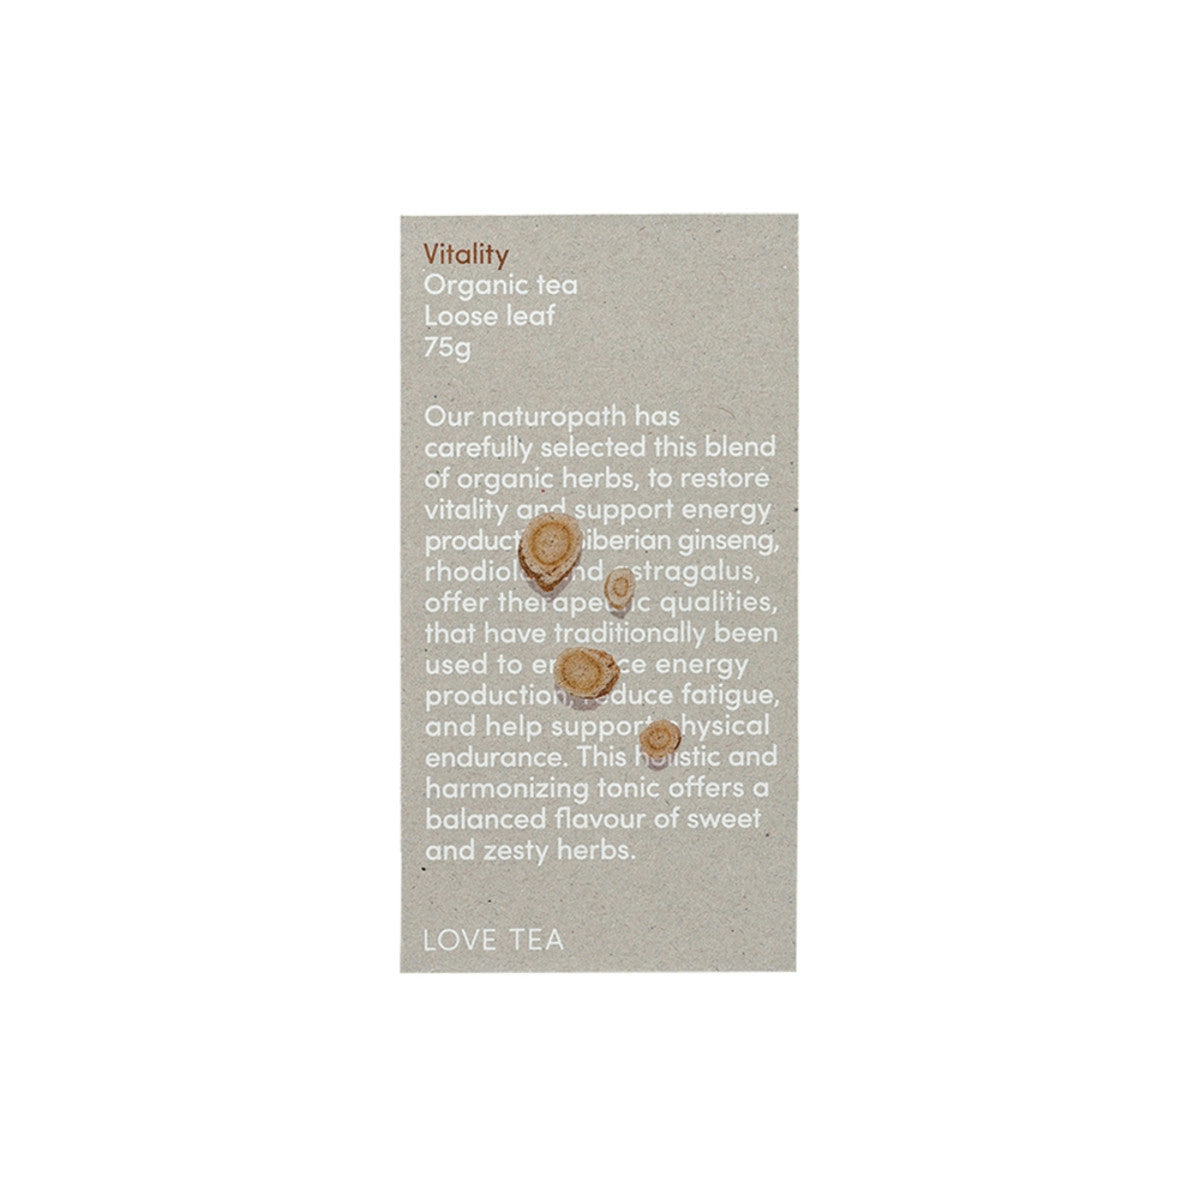 image of Love Tea Organic Vitality Tea Loose Leaf 75g on white background 